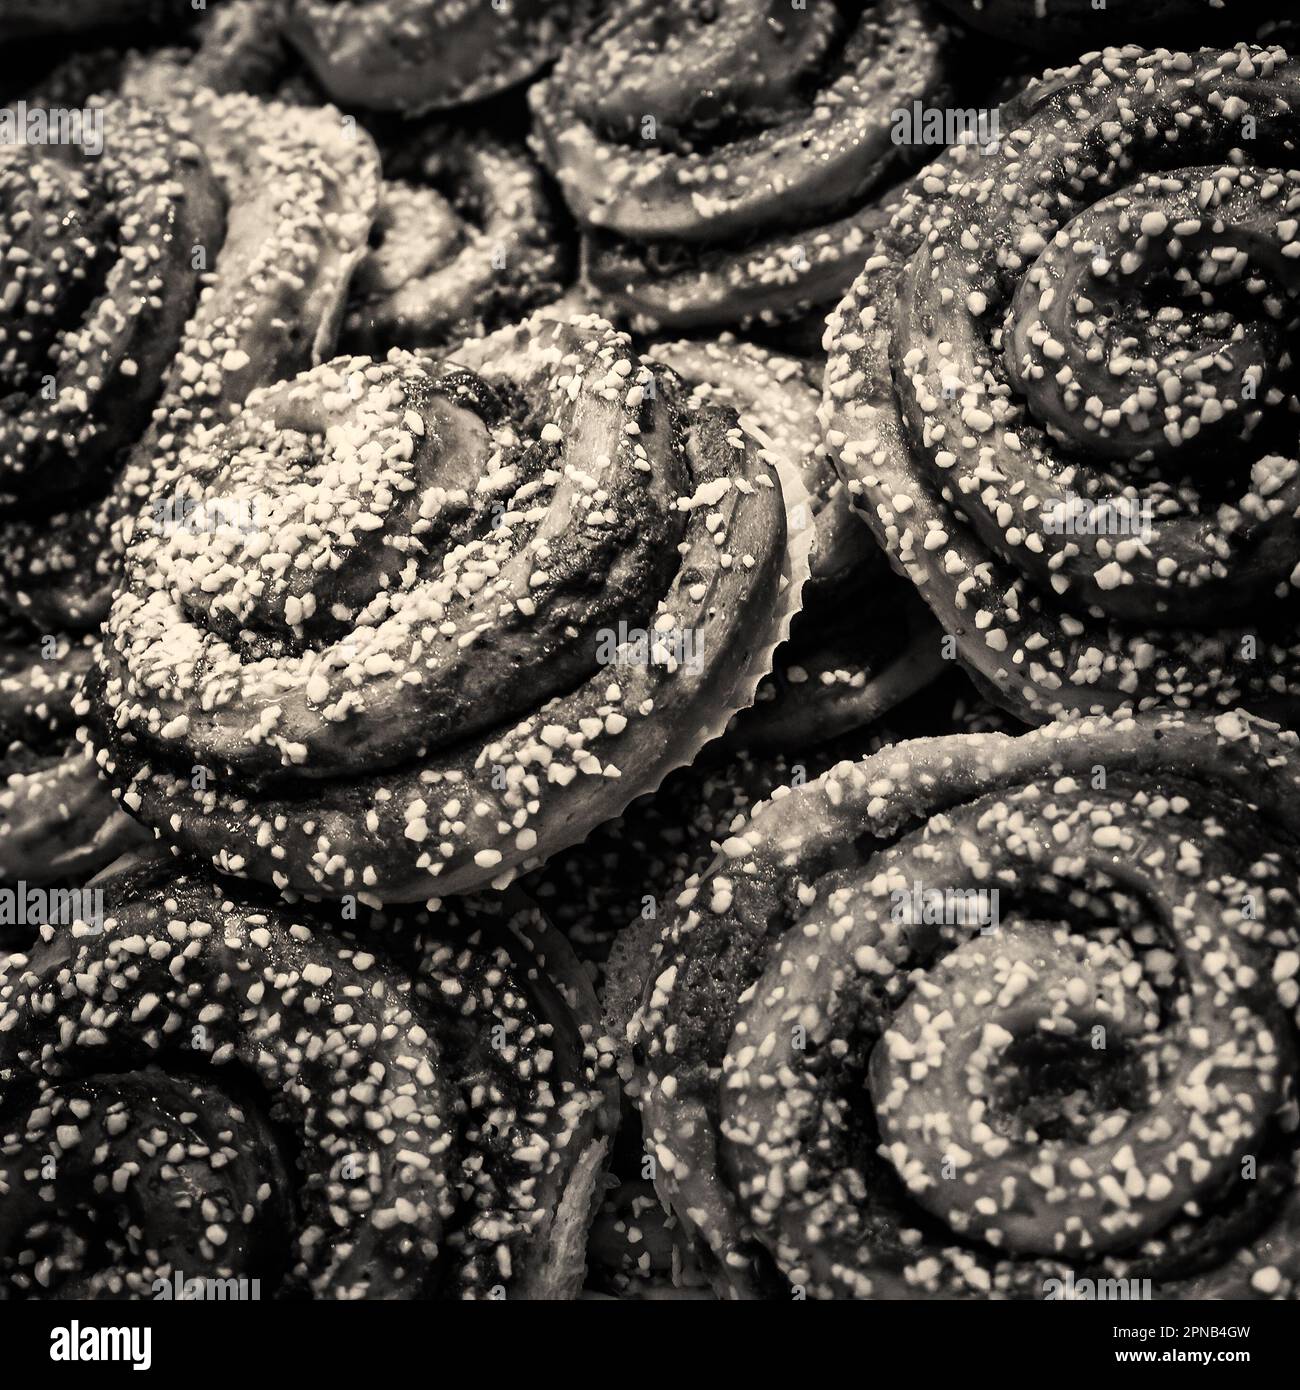 Schwarzweißes Retro-Bild in Sepia-Tönen eines Tabletts mit schwedischen Zimtbrötchen (Kanelbullar), das an ein Foto im viktorianischen, edwardianischen oder 1940er-Stil erinnert Stockfoto